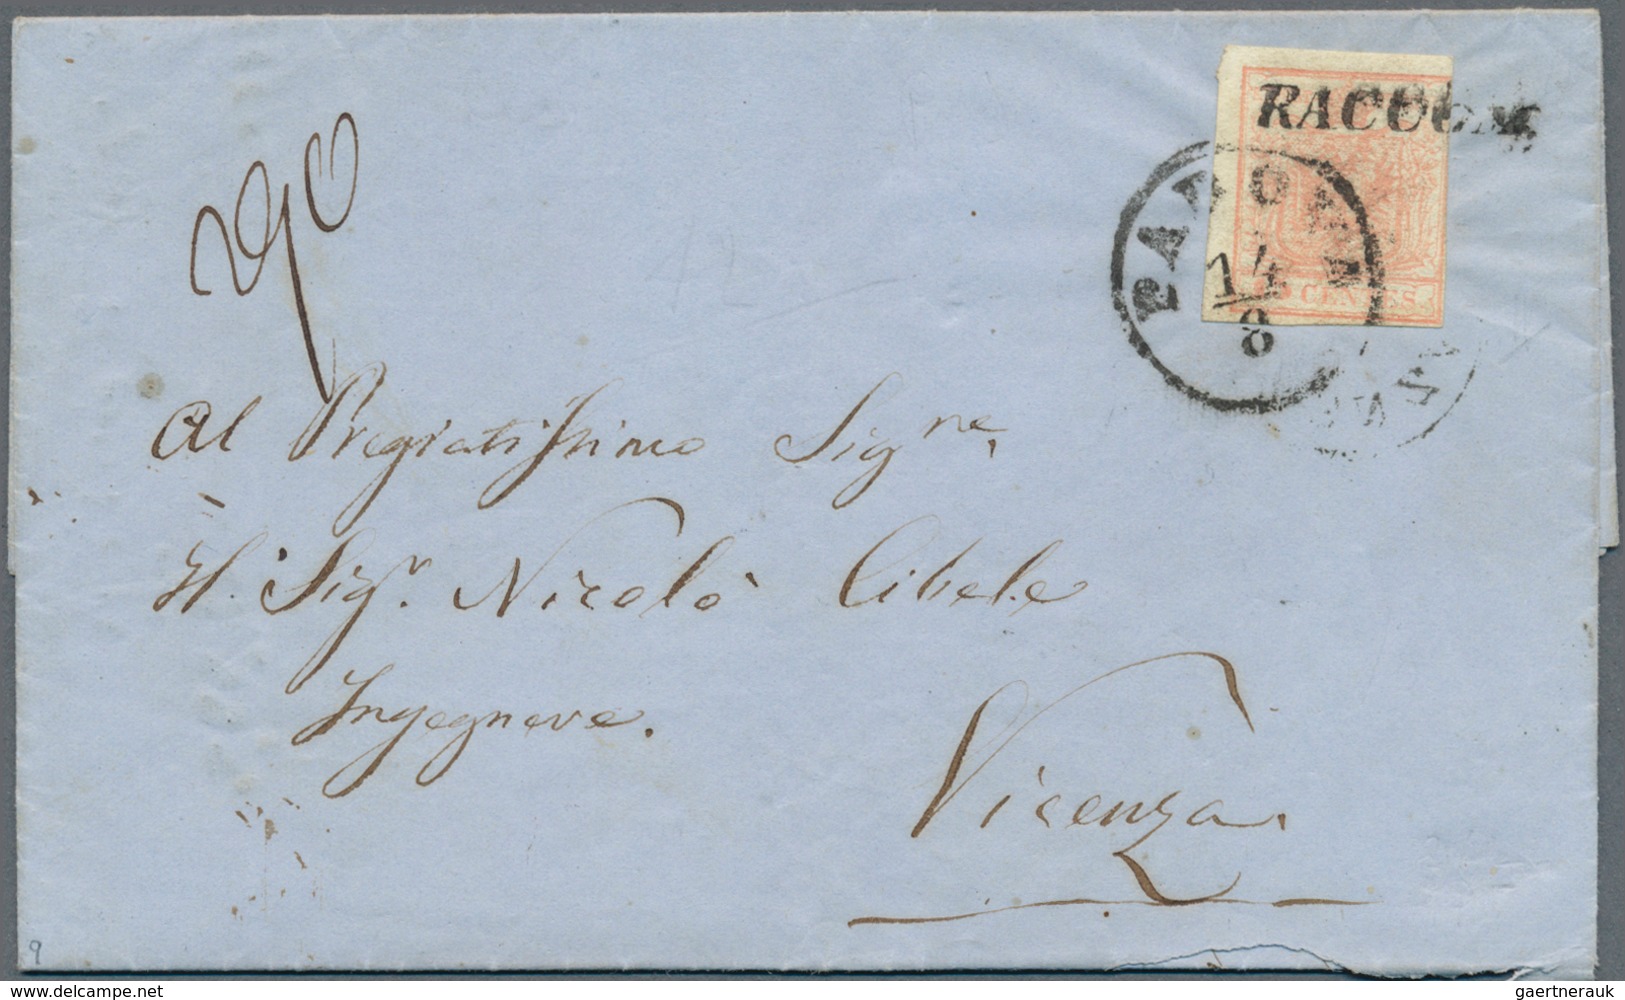 Österreich - Lombardei und Venetien: 1850/1857, Konvolut mit 20 frankierten Briefen der 1.Ausgabe. D